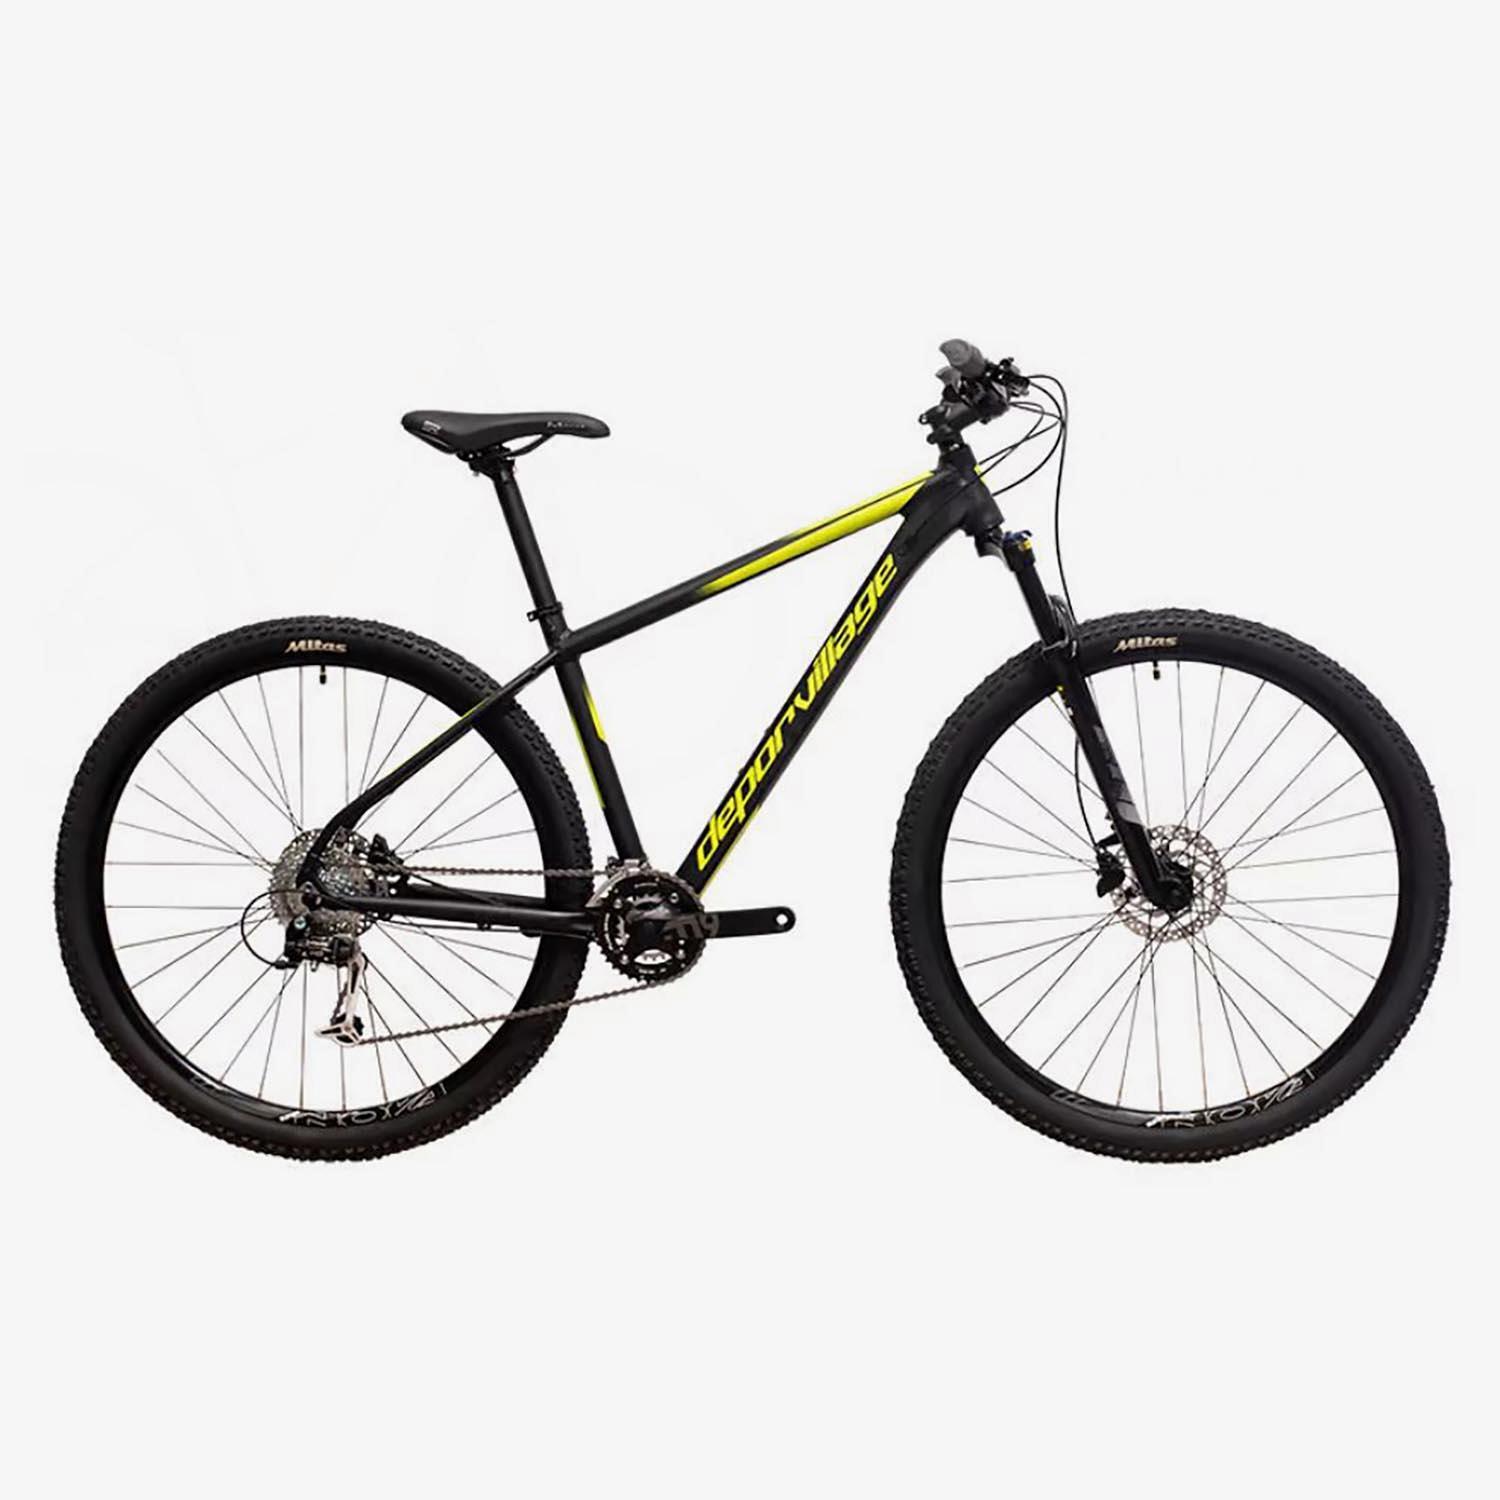 Deporvillage Pr500 29 - Noir - Vélo de montagne sports taille L